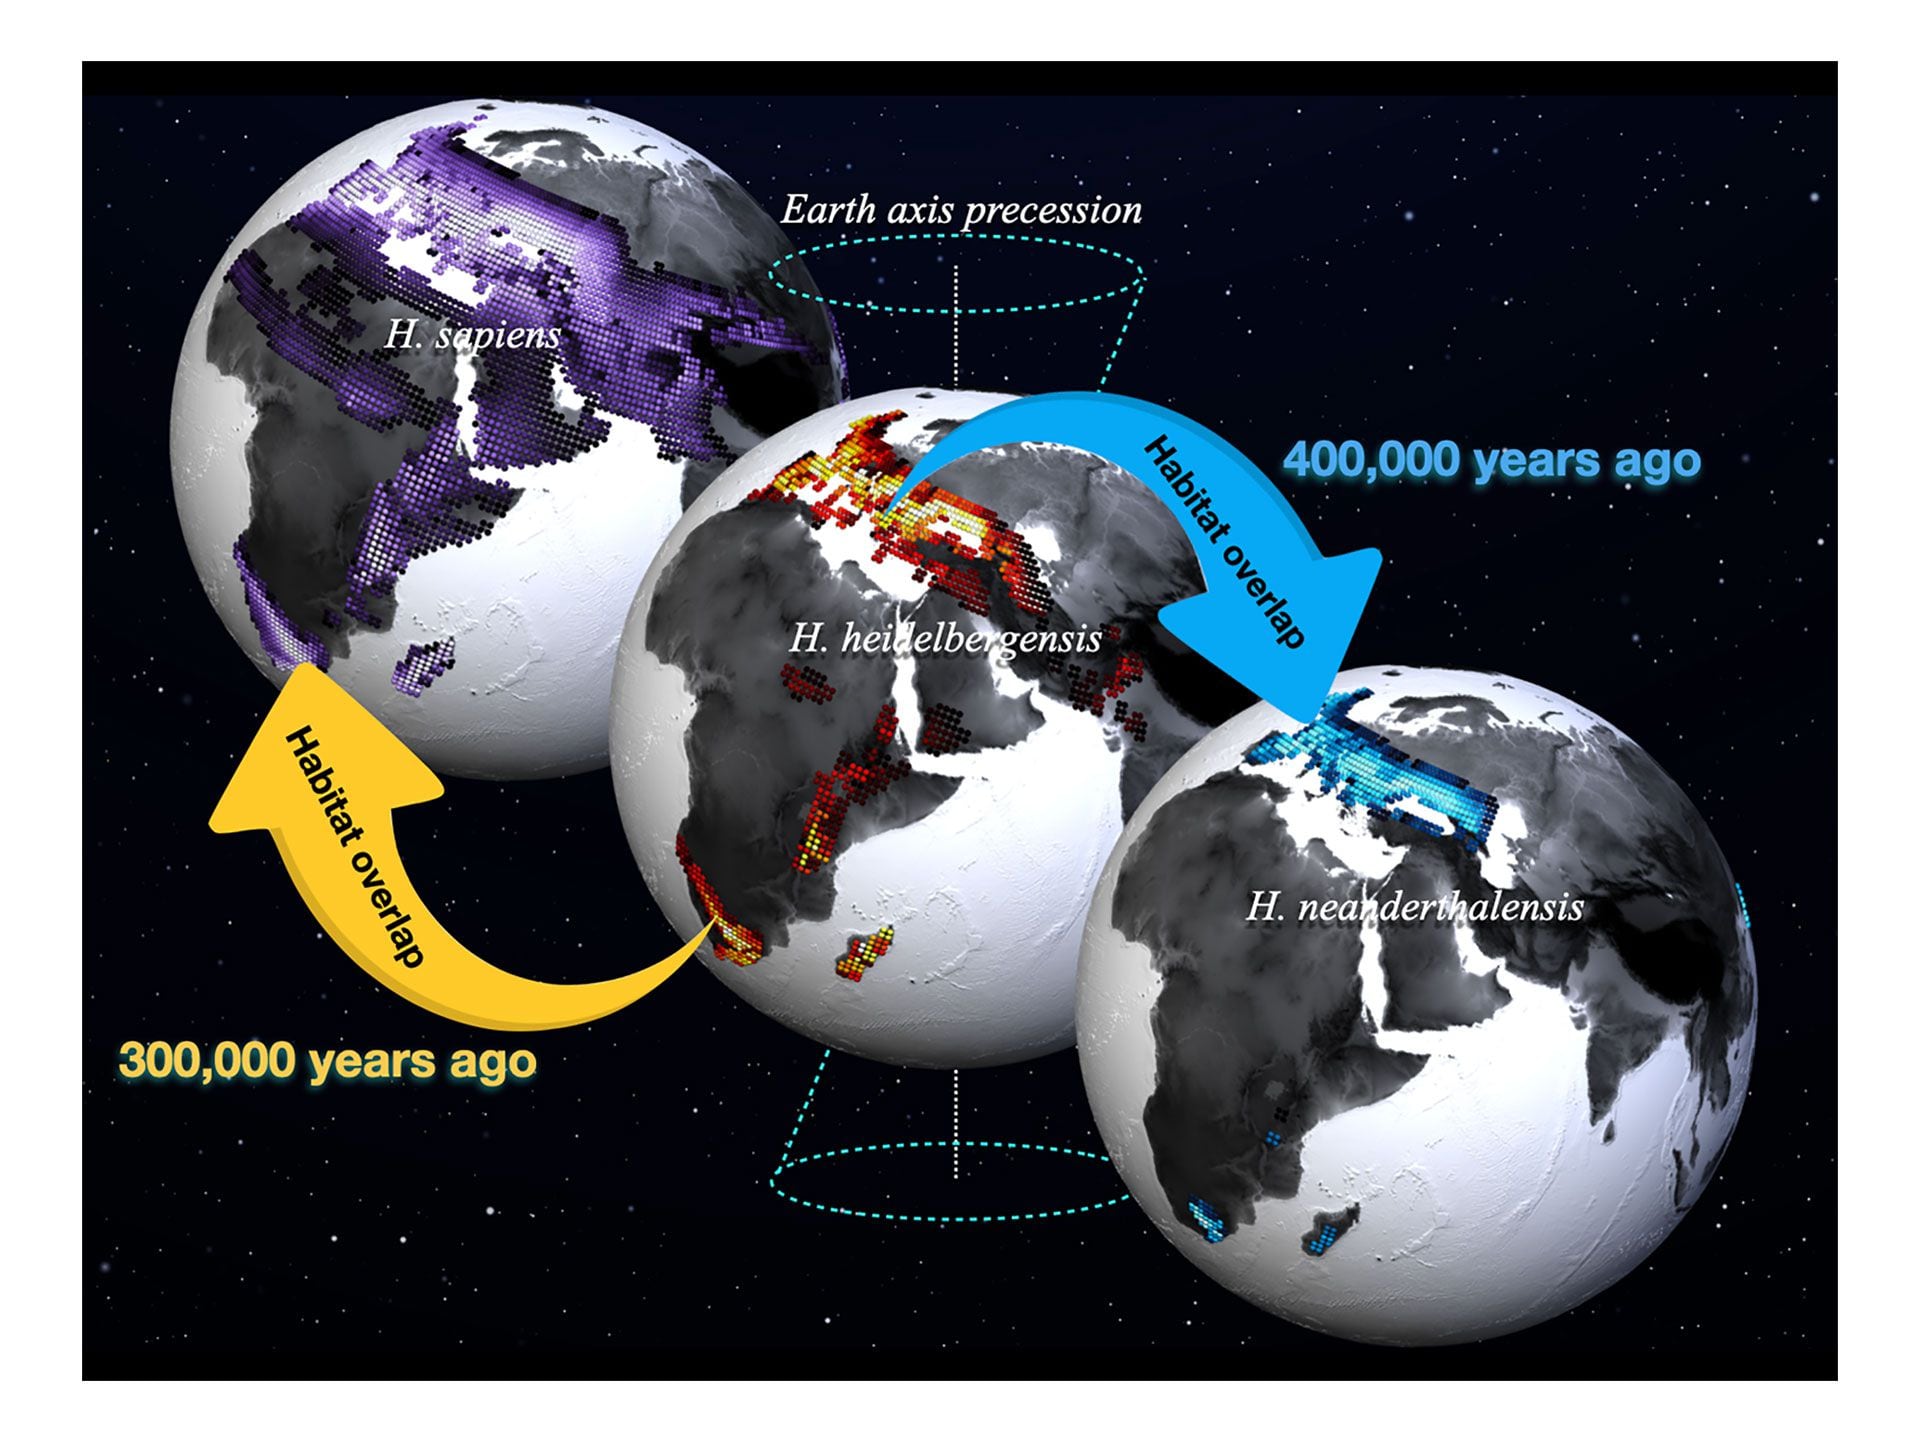 Los hábitats preferidos del Homo sapiens (sombreado morado, izquierda), el Homo heidelbergensis (sombreado rojo, centro), y el Homo neanderthalensis (sombreado azul, derecha) fueron calculados a partir de una simulación de paleoclima realizada en el IBS Center for Climate Physics y un recopilación de datos fósiles y arqueológicos. Los valores más claros indican una mayor idoneidad del hábitat. Las fechas (1 ka = 1000 años antes del presente) se refieren a las edades estimadas de los fósiles más jóvenes y más antiguos utilizados en el estudio. Crédito:   Instituto de Ciencias Básicas (IBS) para la Física del Clima (ICCP), Universidad Nacional de Pusan (Corea del Sur).